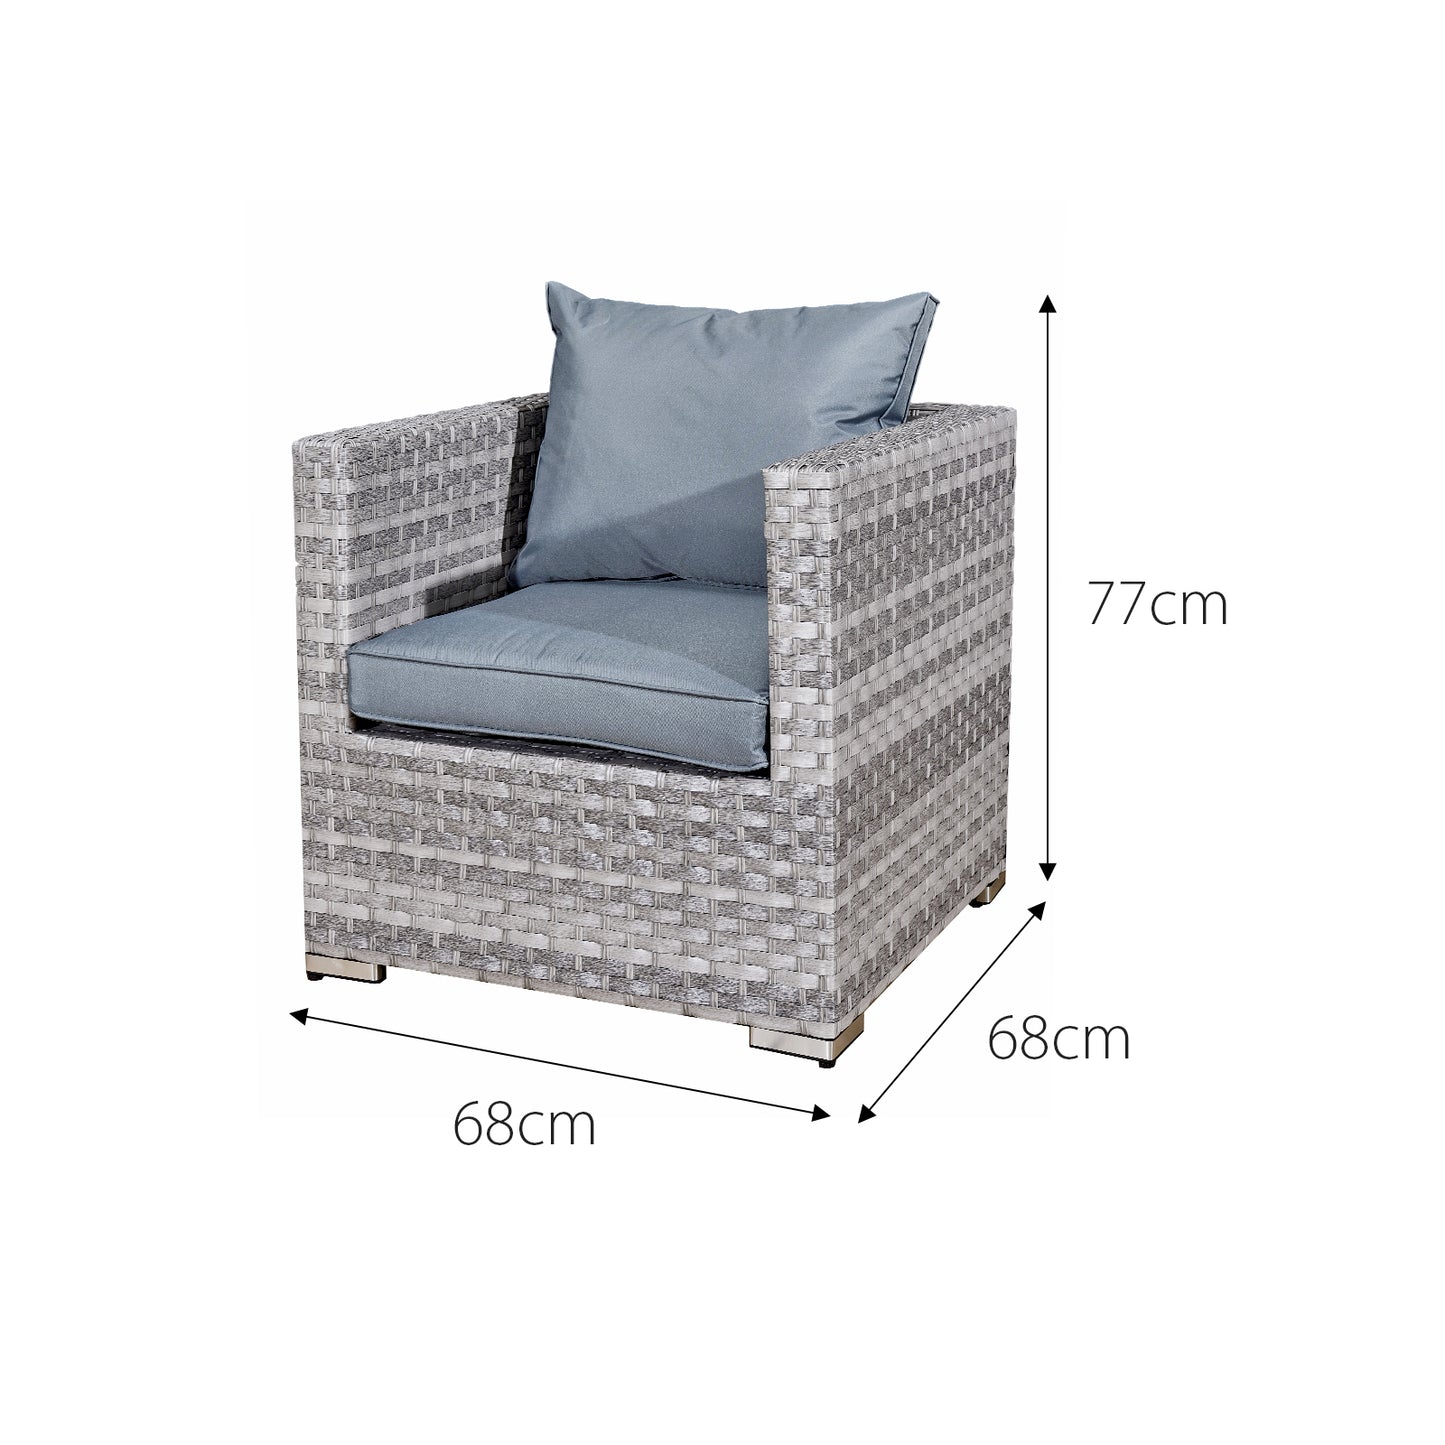 Garden Furniture Rattan Sofa Acorn 10-seater set